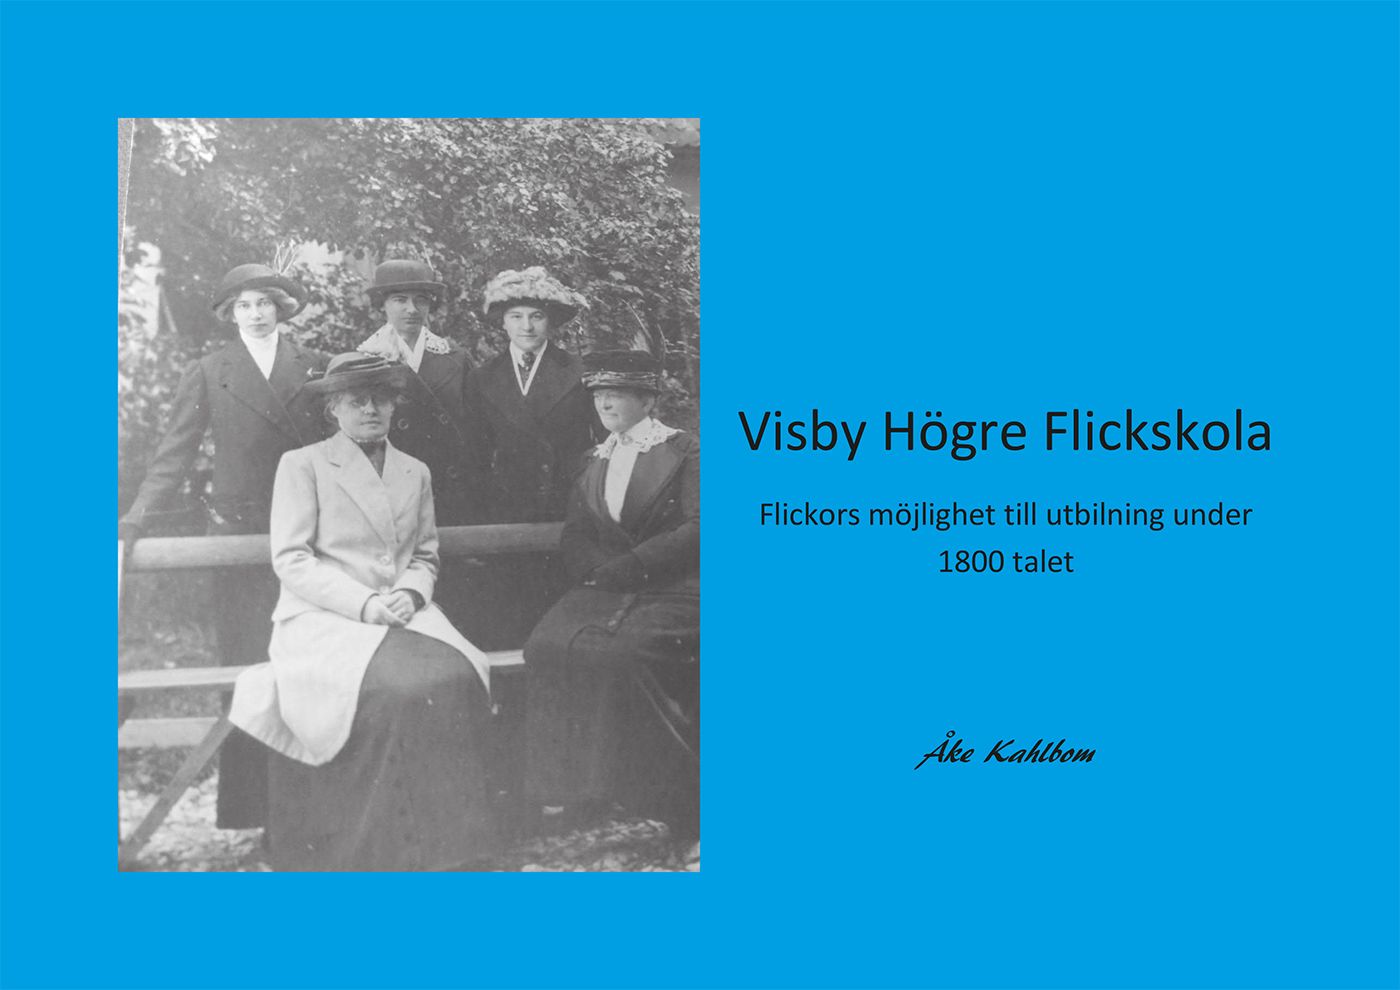 Visby Högre Flickskola, eBook by Åke Kahlbom